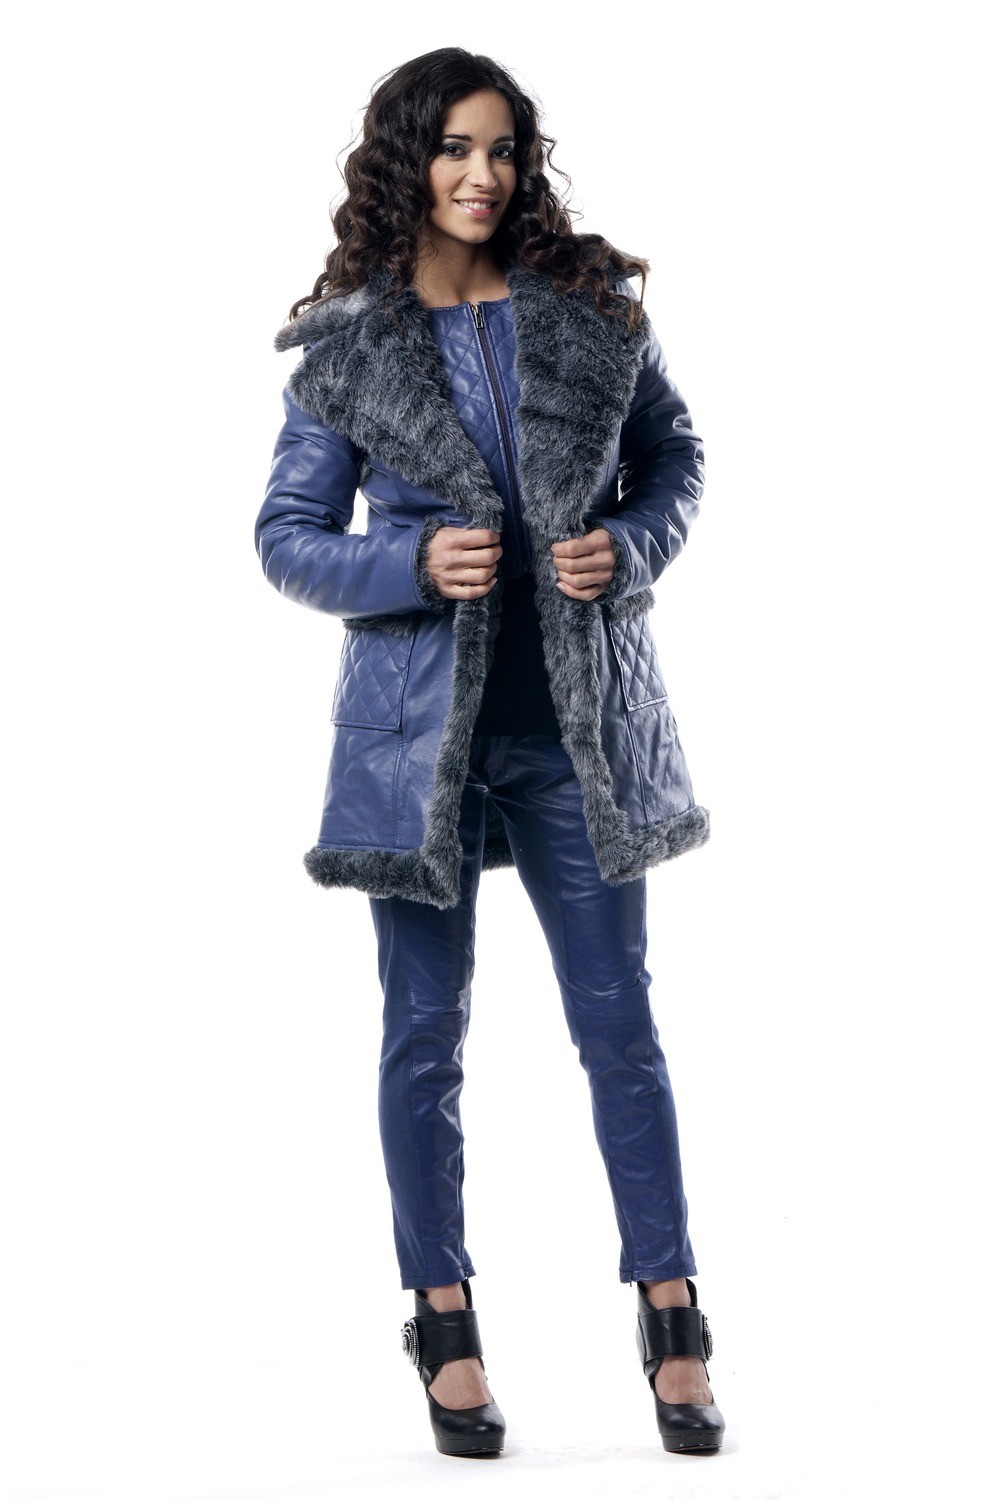 Les Fees Du Vent Couture: Crazy Sexy Genuine Leather Faux Fur Coat